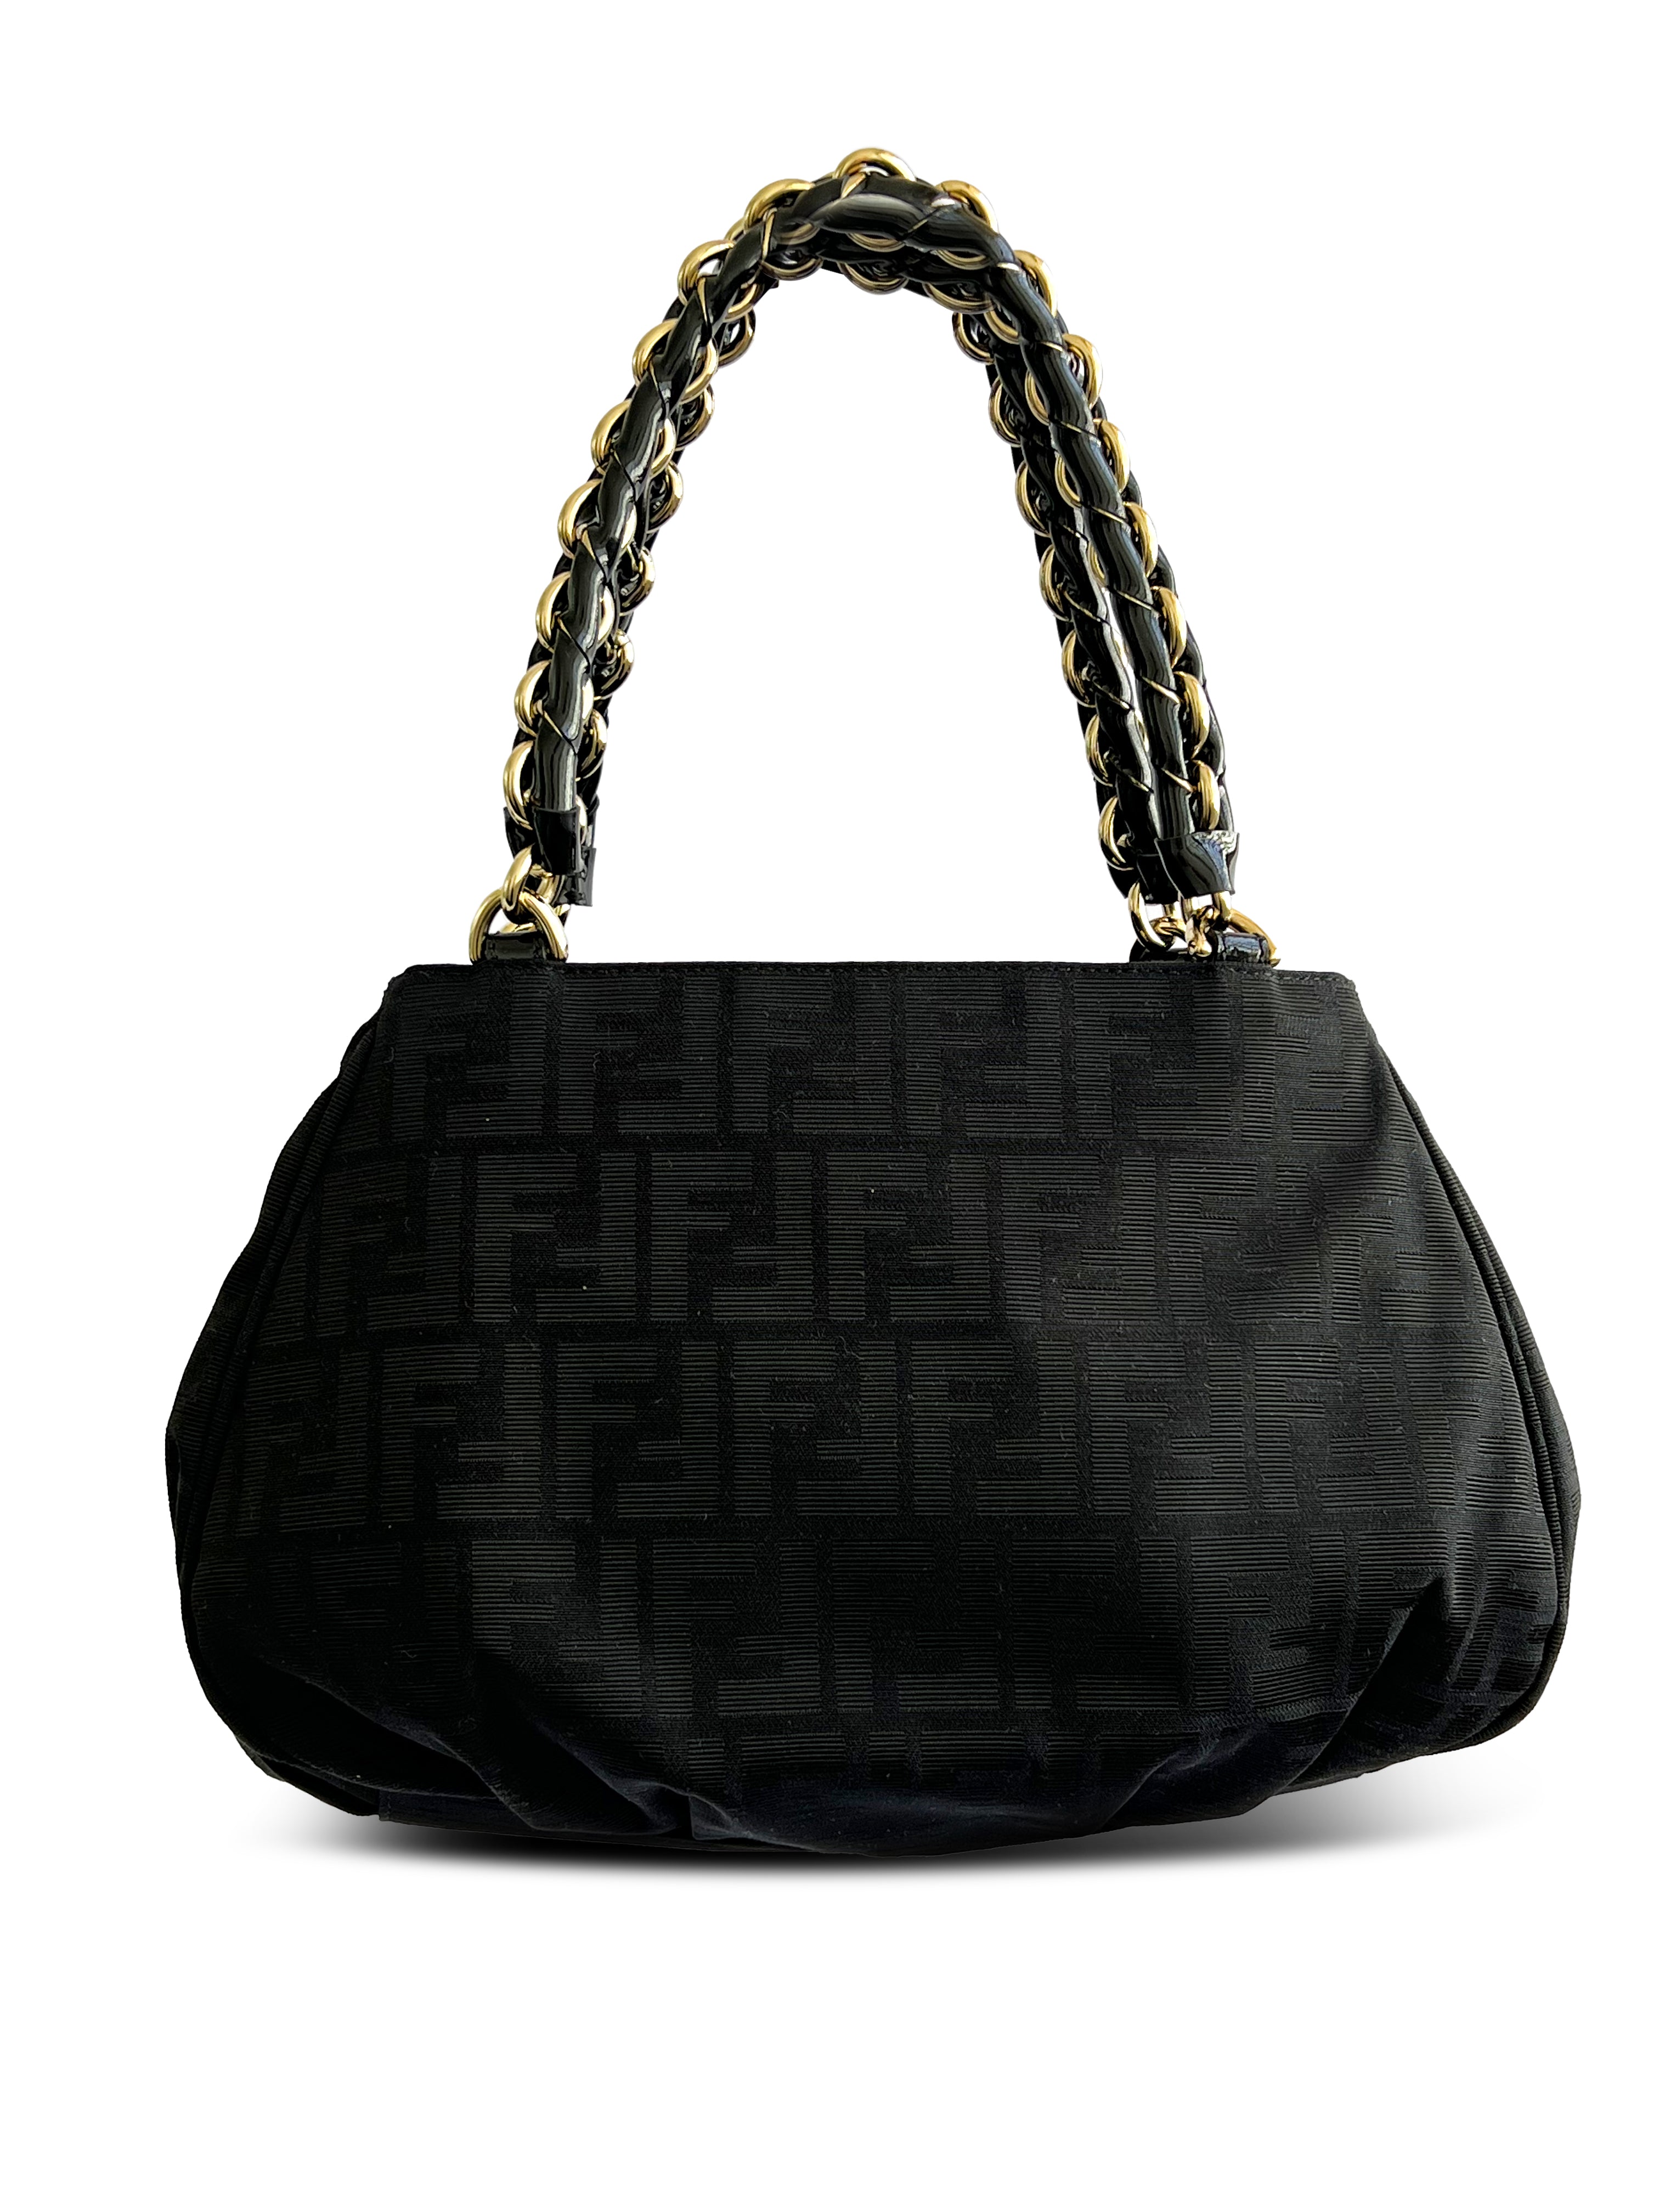 Fendi Black Mia Canvas & Patent Leather Shoulder Bag